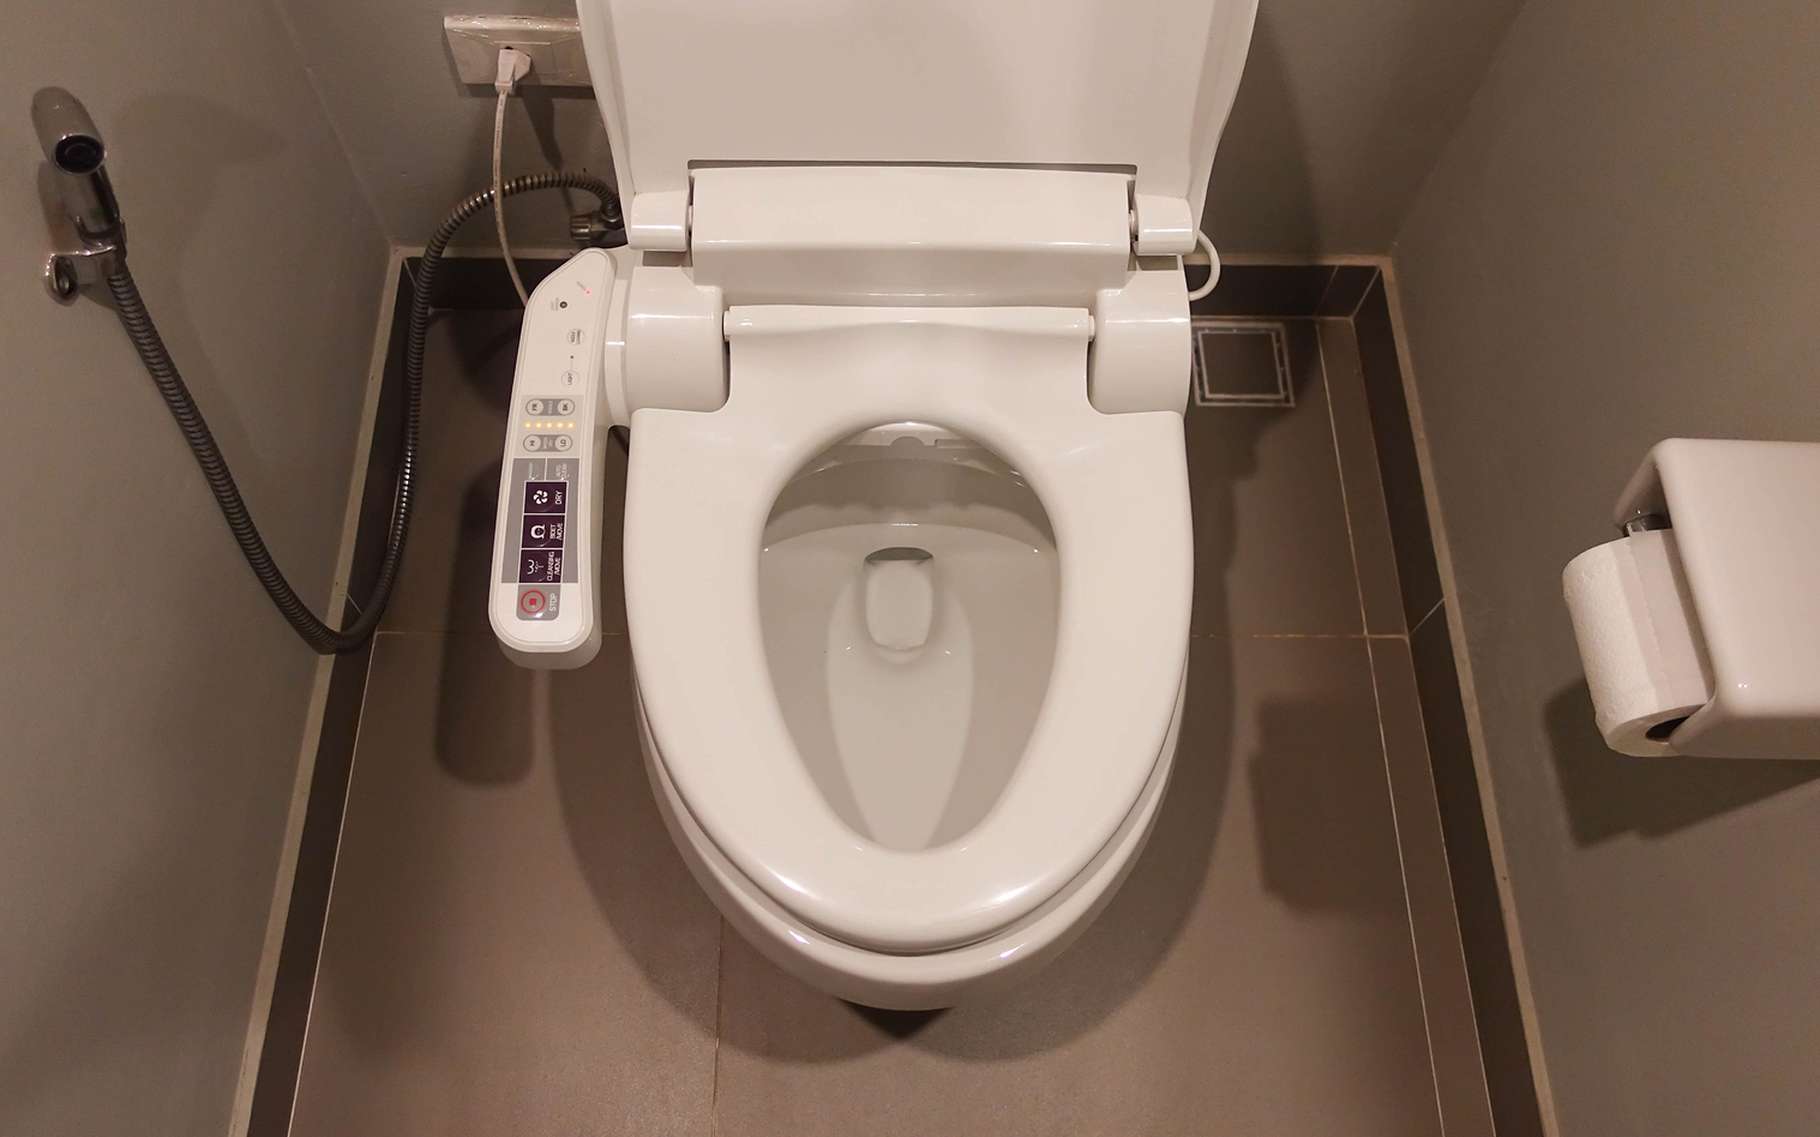 Les toilettes connectées peuvent être attaquées par des hackers. © Panatda Saengow, Shutterstock